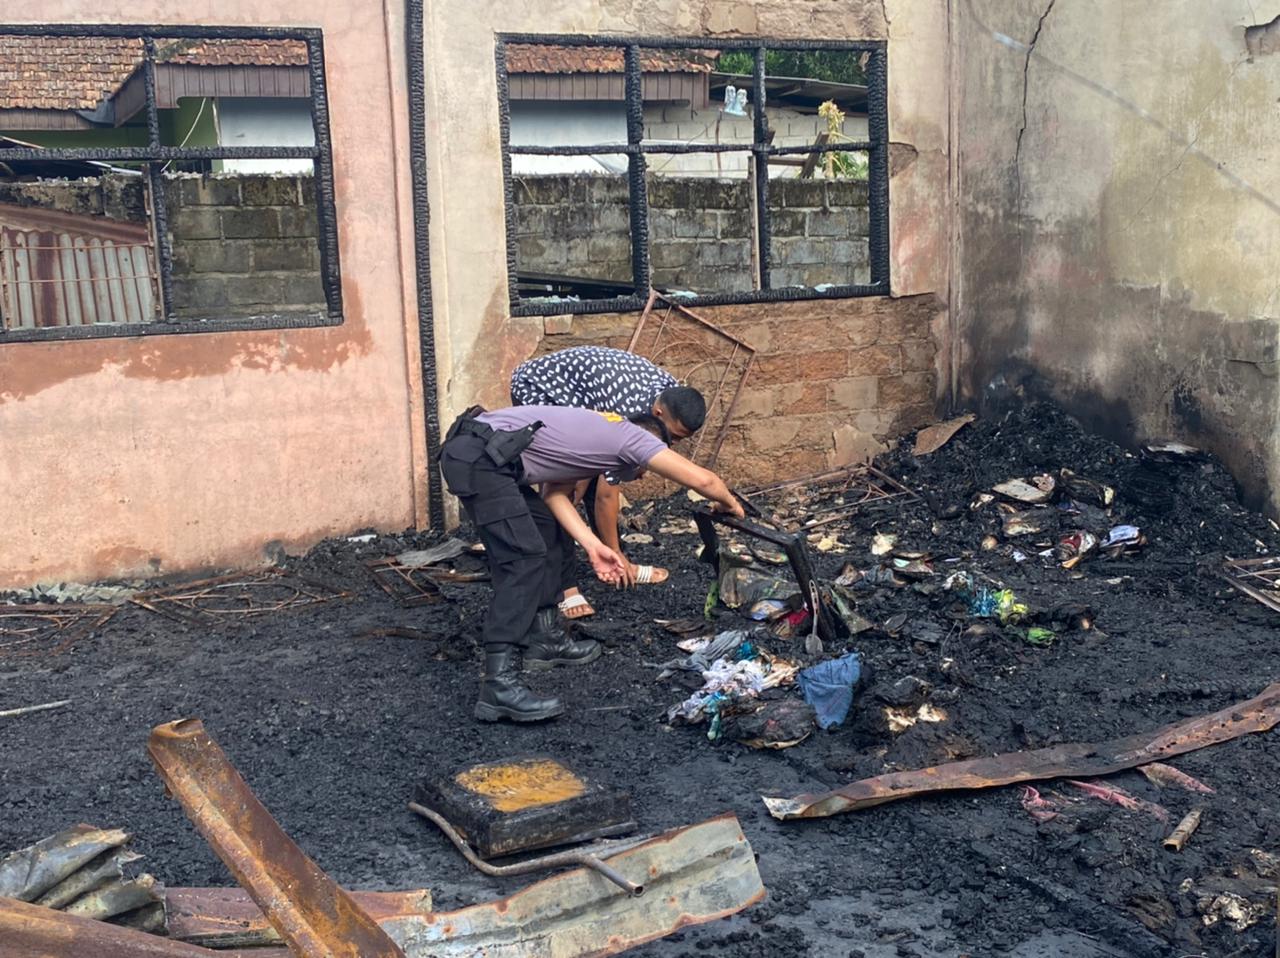 Polisi membantu membersihkan puing-puing bangunan yang tebrakar di Ponpes Nurul Iman Dharmasraya. (Foto: Dok. Humas Polres Dharmasraya)